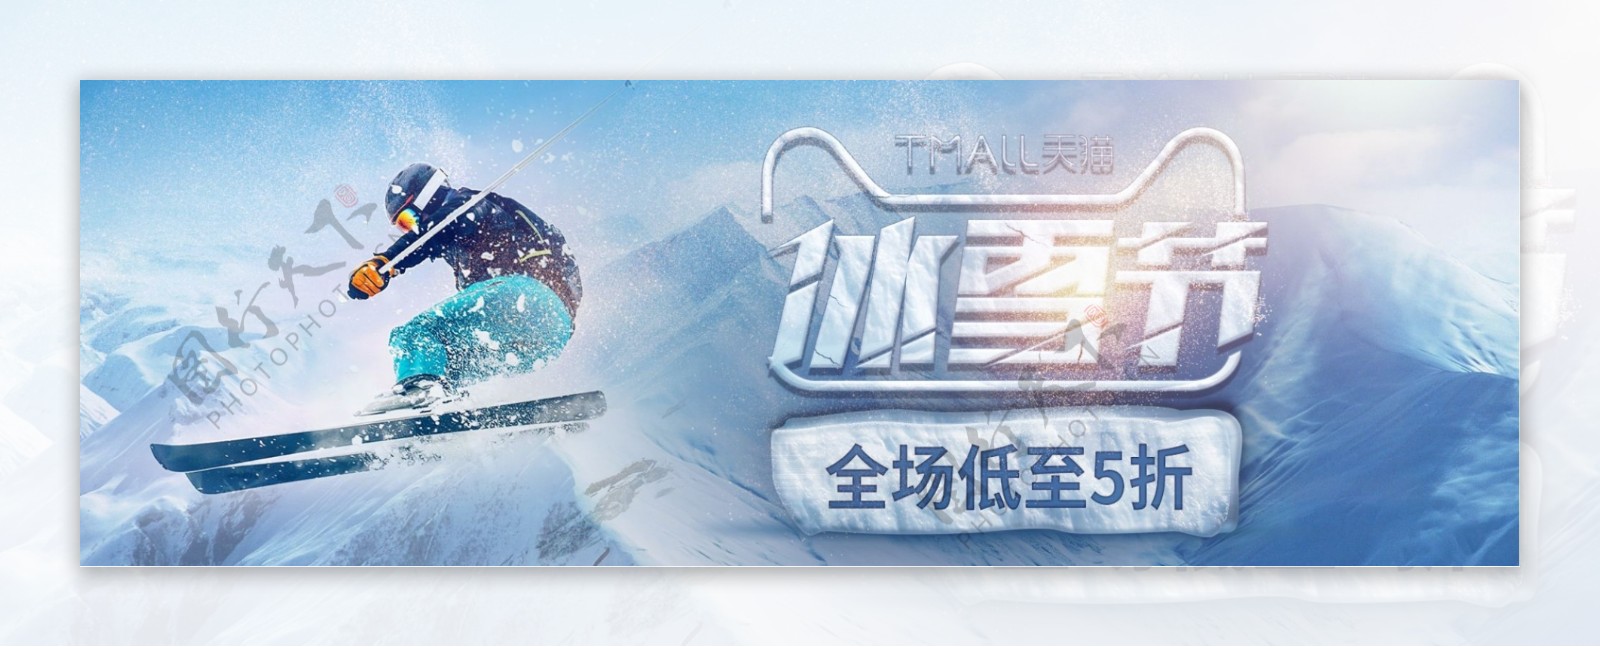 蓝色简约雪山滑雪冰雪节电商淘宝活动海报